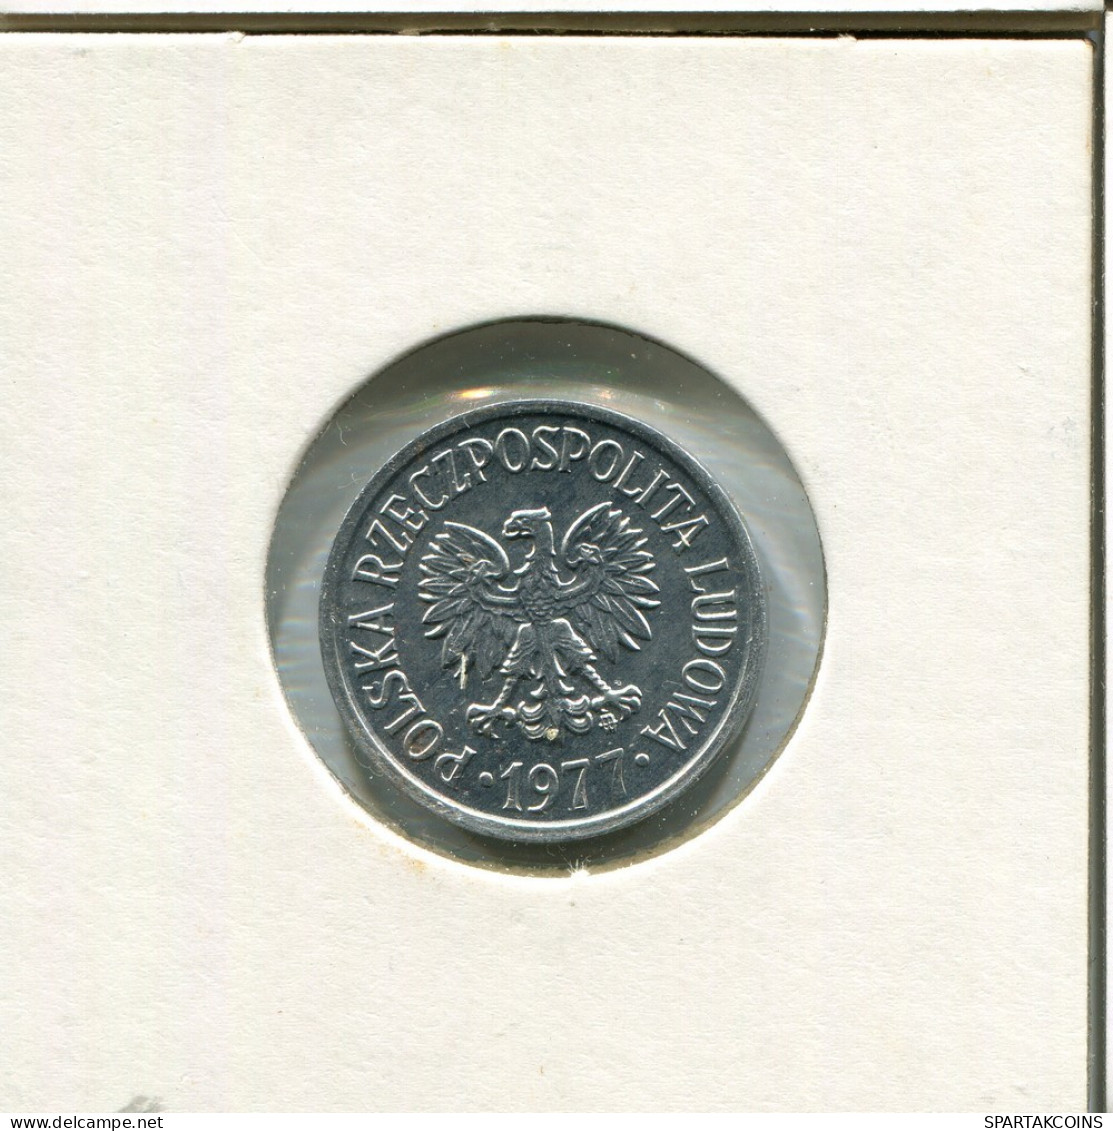 20 GROSZY 1977 POLAND Coin #AR776.U.A - Polen